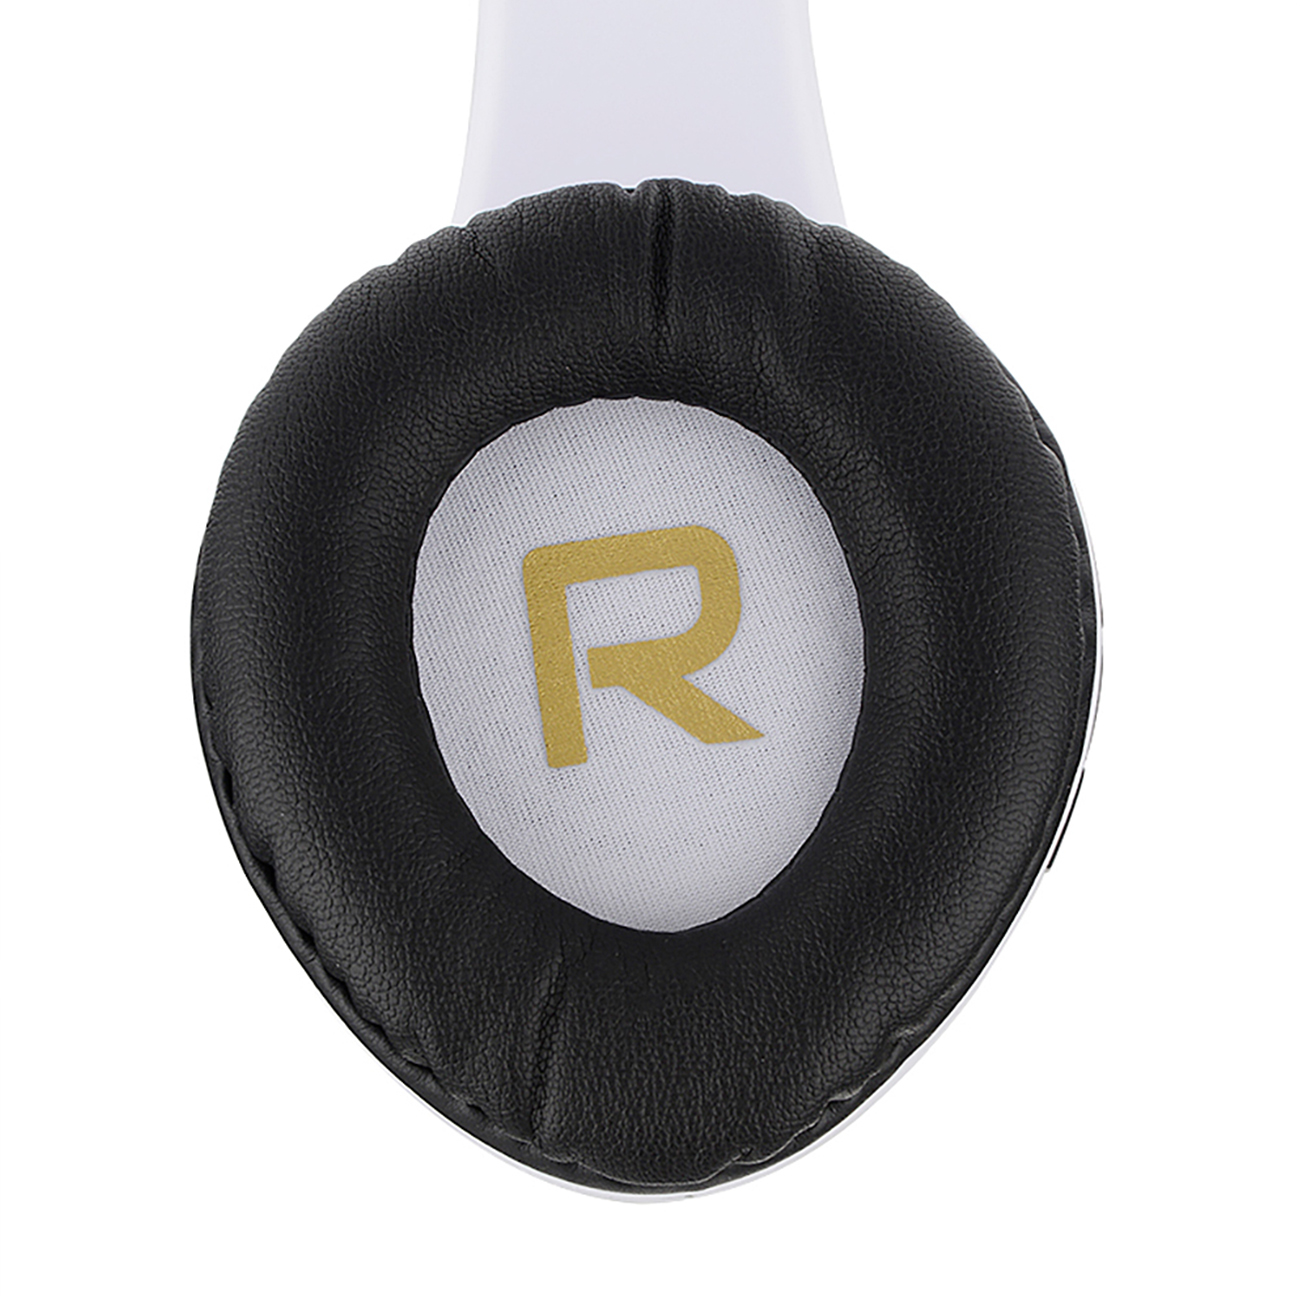 POWERLOCUS P2, Over-ear Kopfhörer Bluetooth Schwarz/Weiß